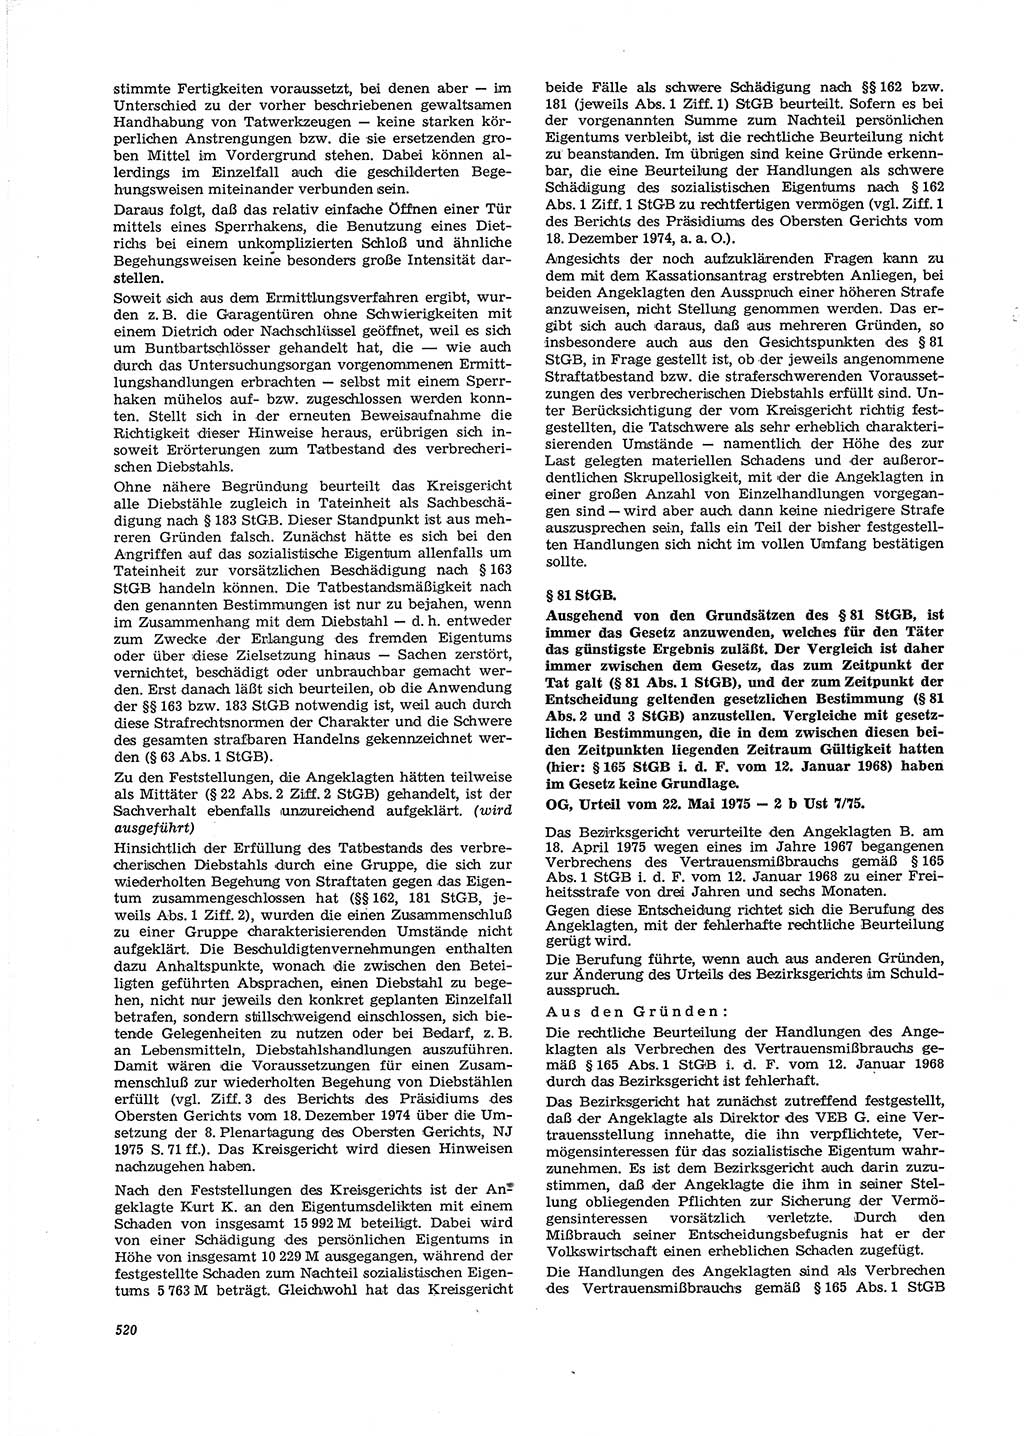 Neue Justiz (NJ), Zeitschrift für Recht und Rechtswissenschaft [Deutsche Demokratische Republik (DDR)], 29. Jahrgang 1975, Seite 520 (NJ DDR 1975, S. 520)